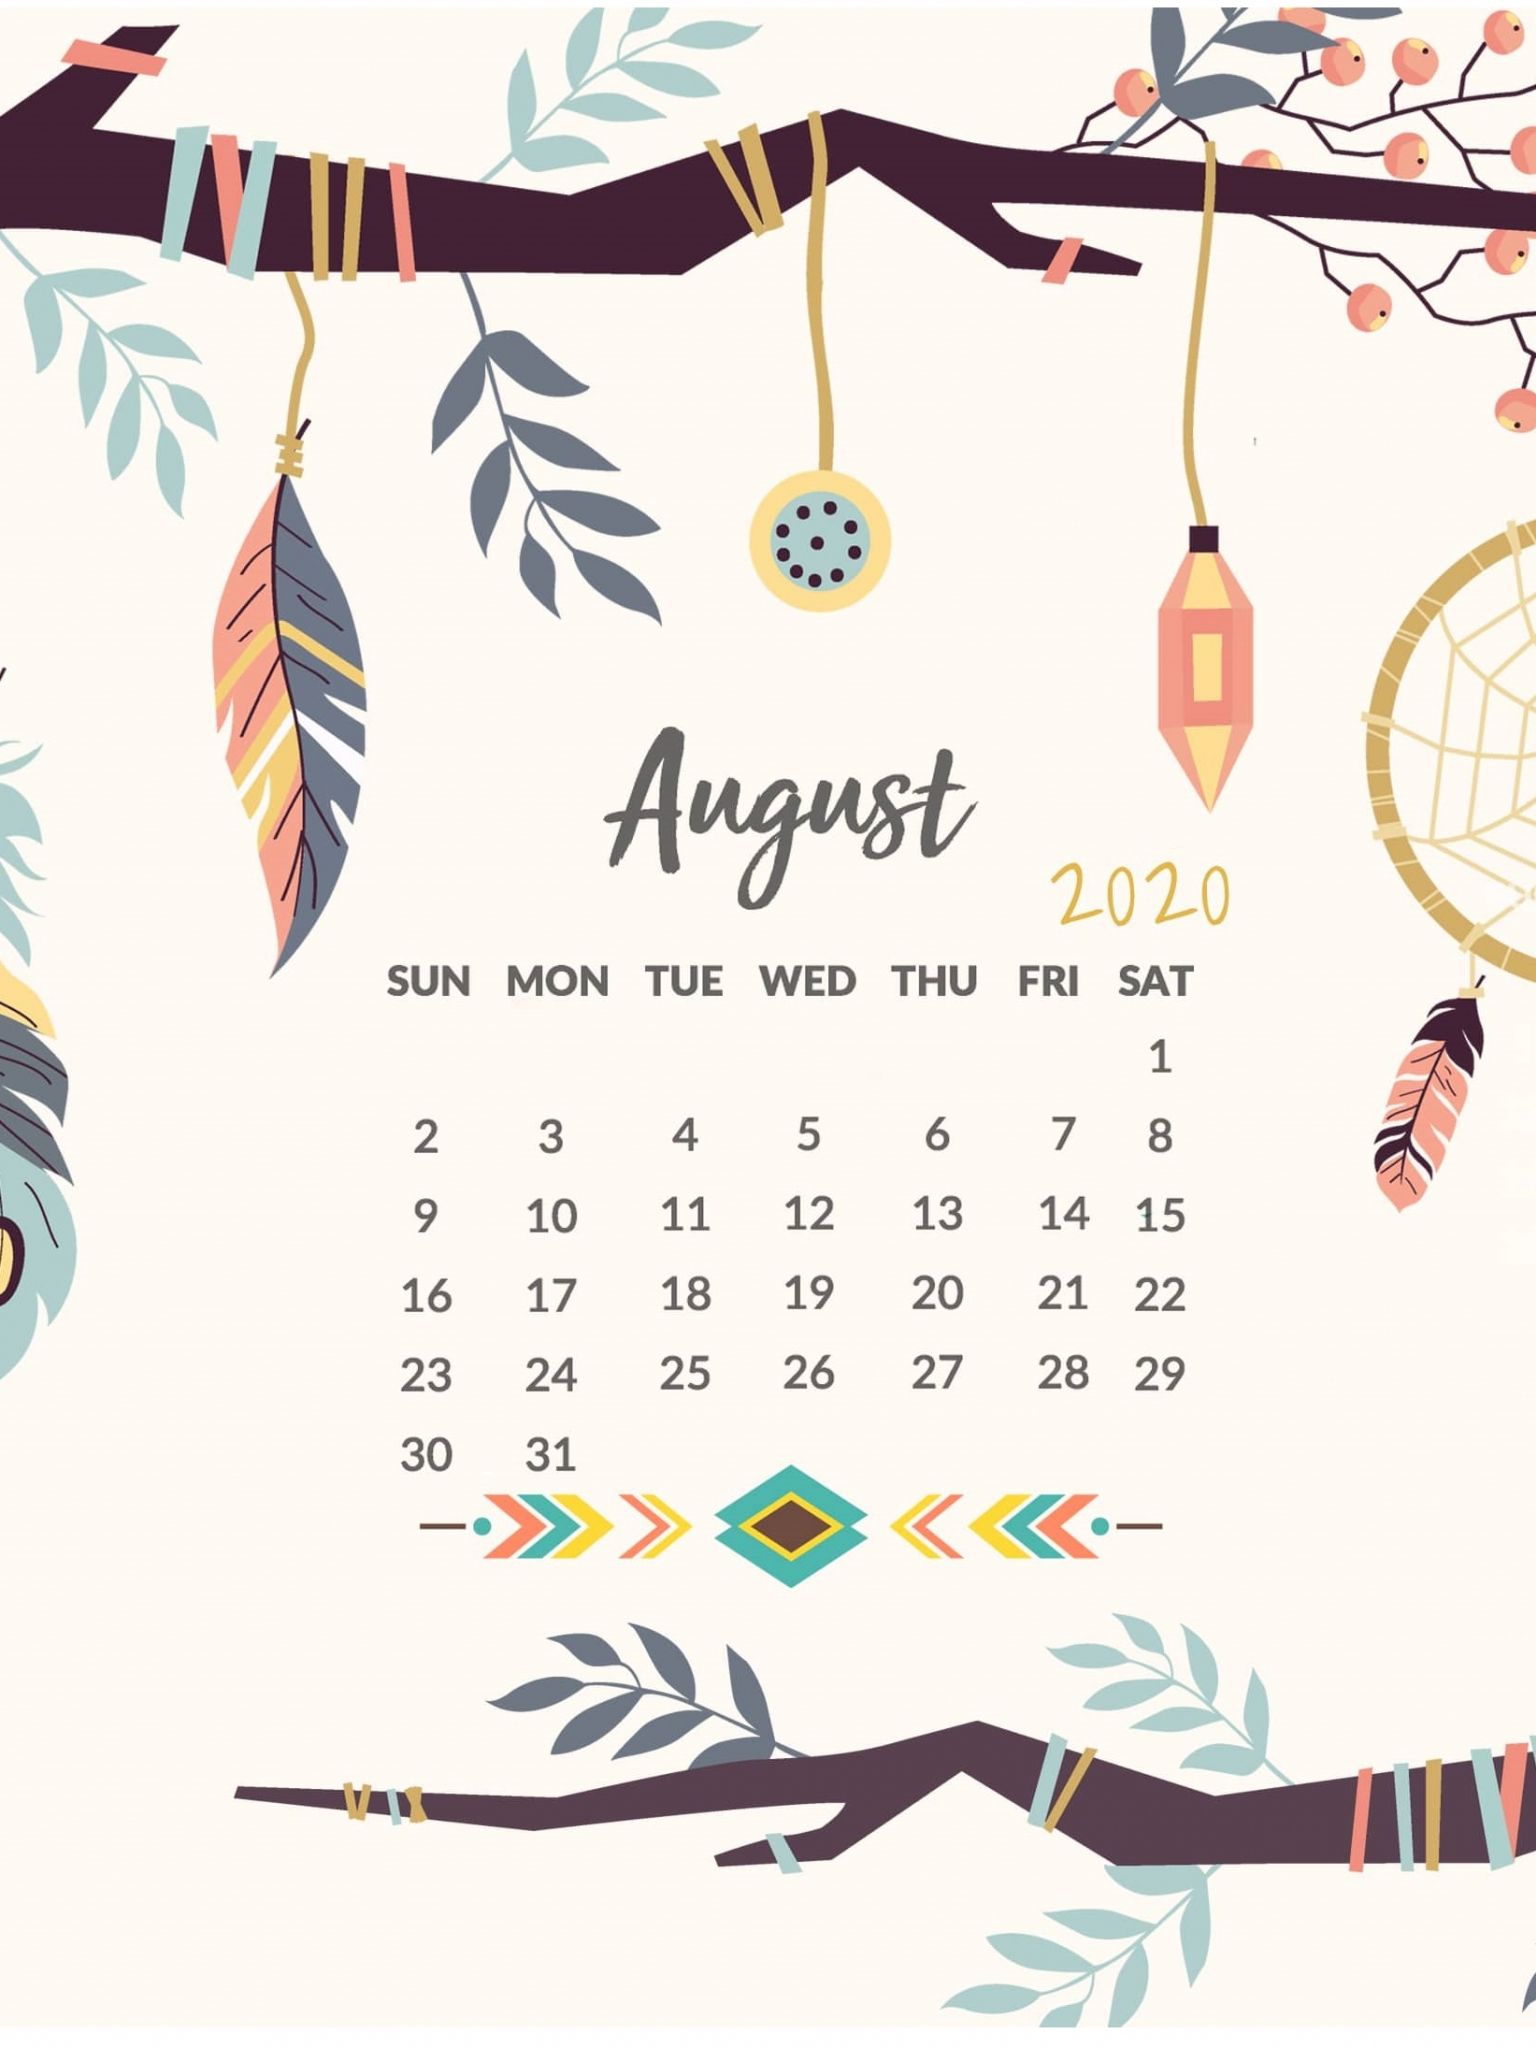 August Calendar Wallpaper For iPhone